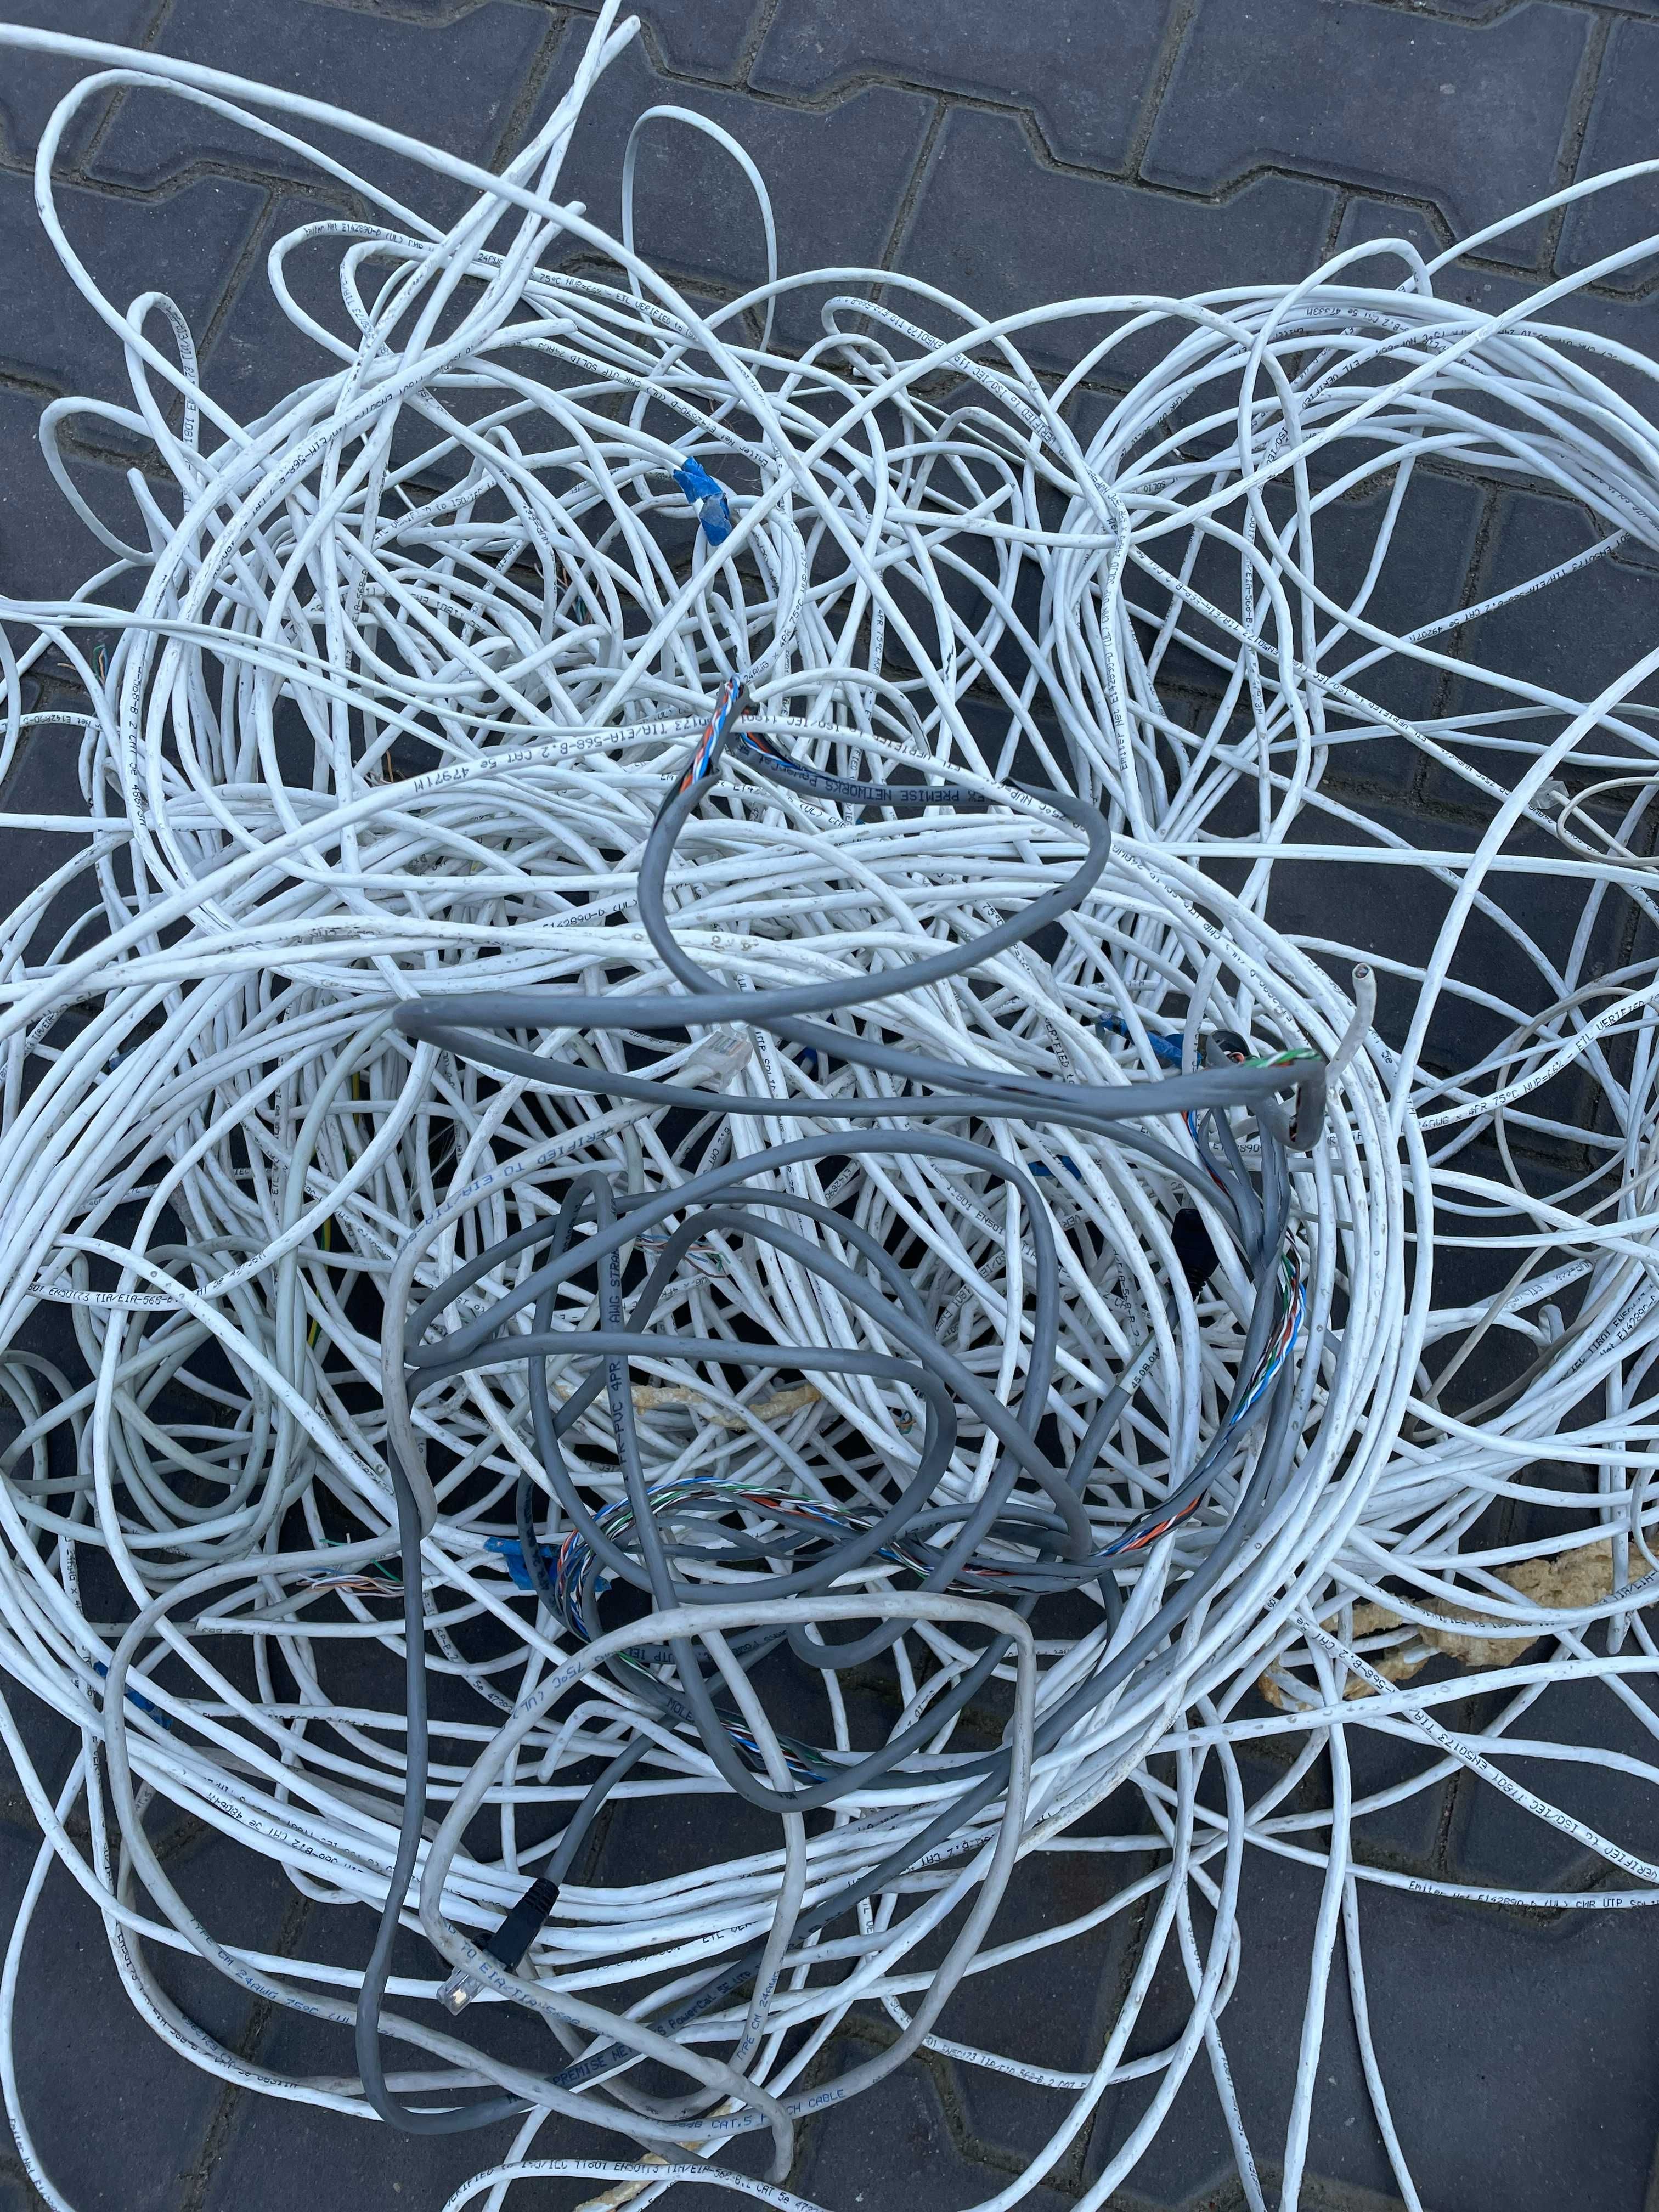 Skup kabli miedzianych/aluminiowych PŁOCK różne rodzaje NAJLEPSZE CENY